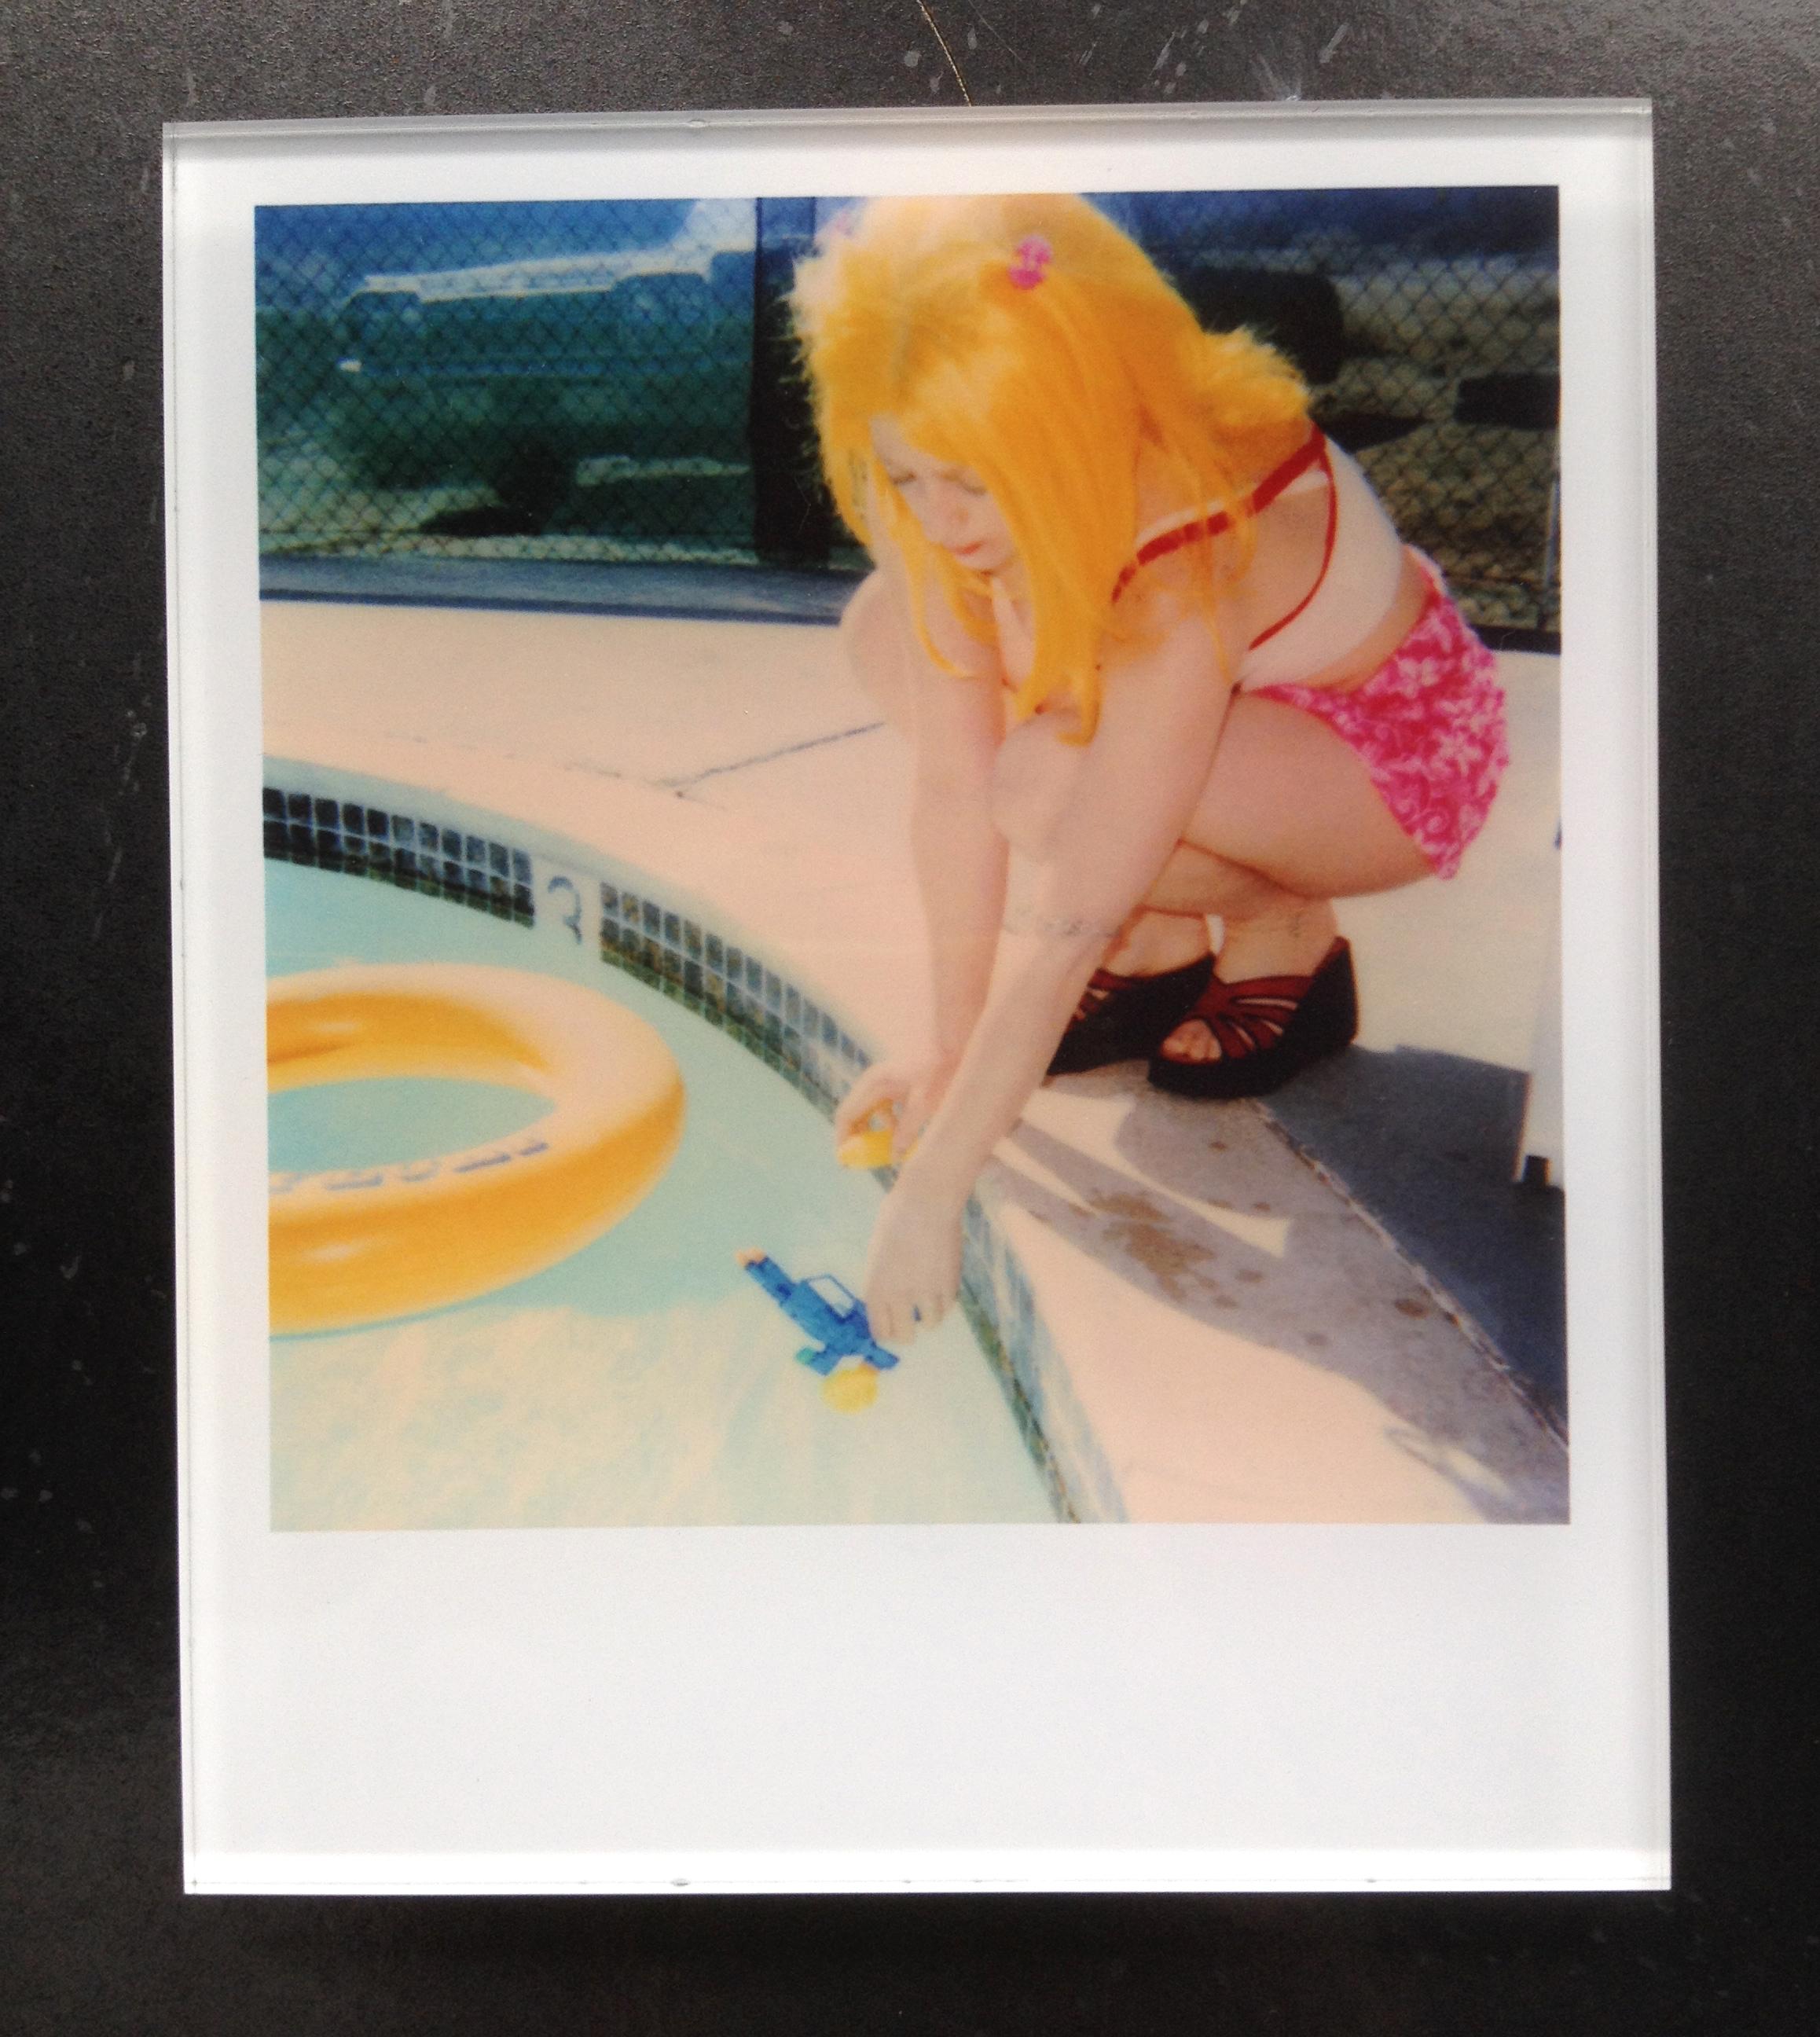 Die Minis von Stefanie Schneider

Max am Pool" (29 Palms, CA), 1999
verso signiert und Signaturmarke
Lambda-Farbfotografien auf der Grundlage des Original-Polaroids. 

Offene Editionen in Polaroidgröße 1999-2013
10,7 x 8,8cm (Bild